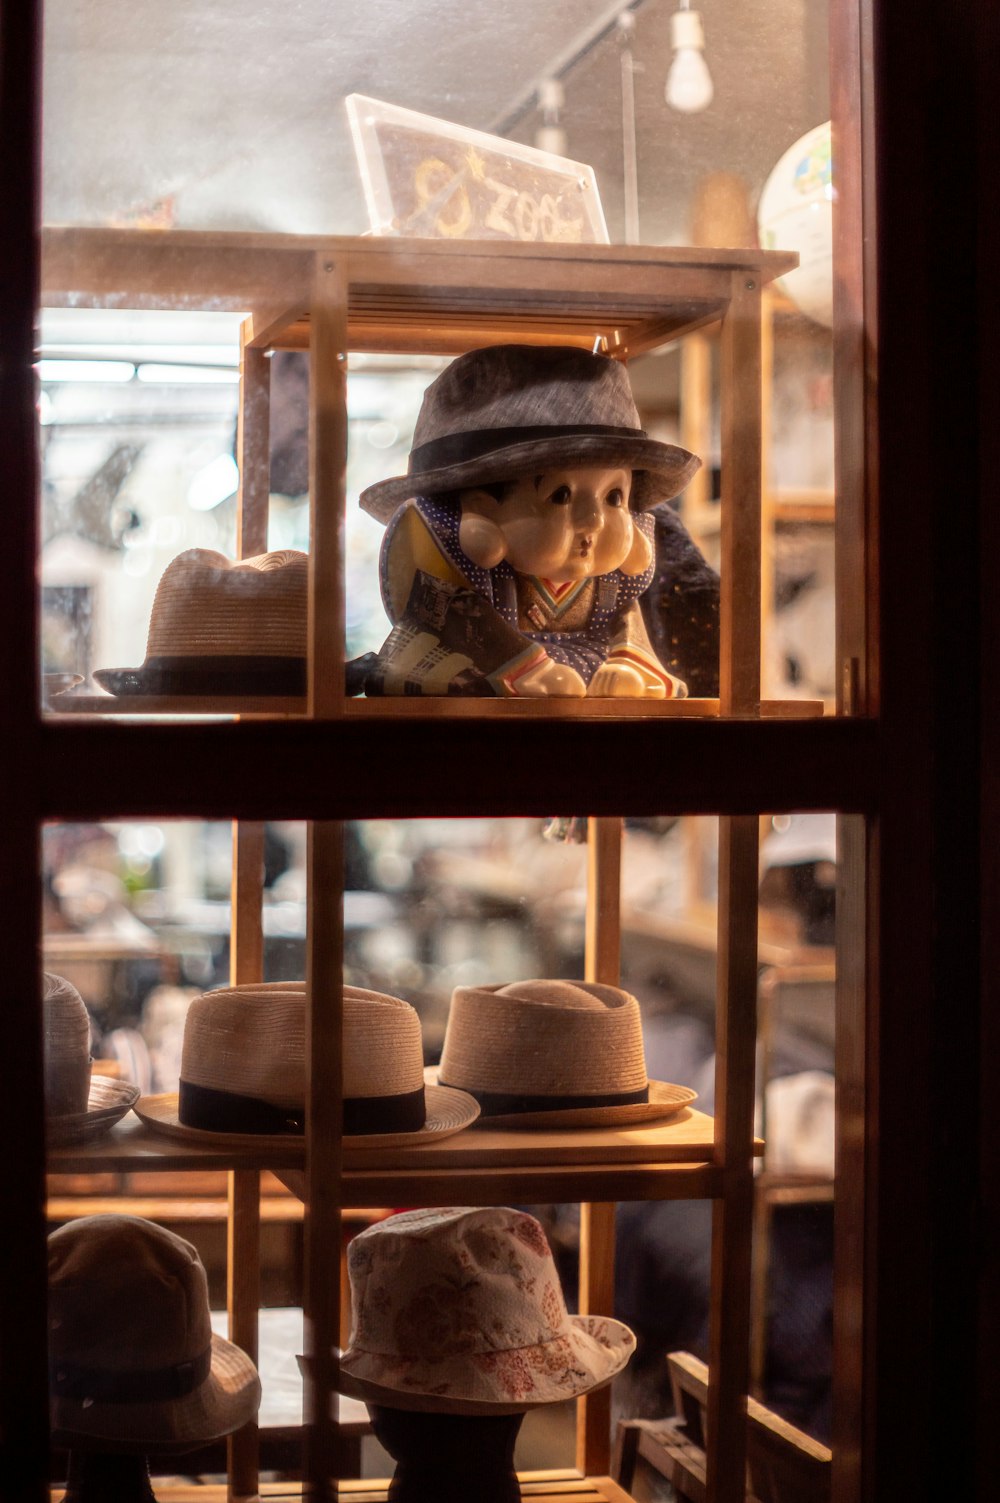 Eine Ausstellung von Hüten in einem Schaufenster